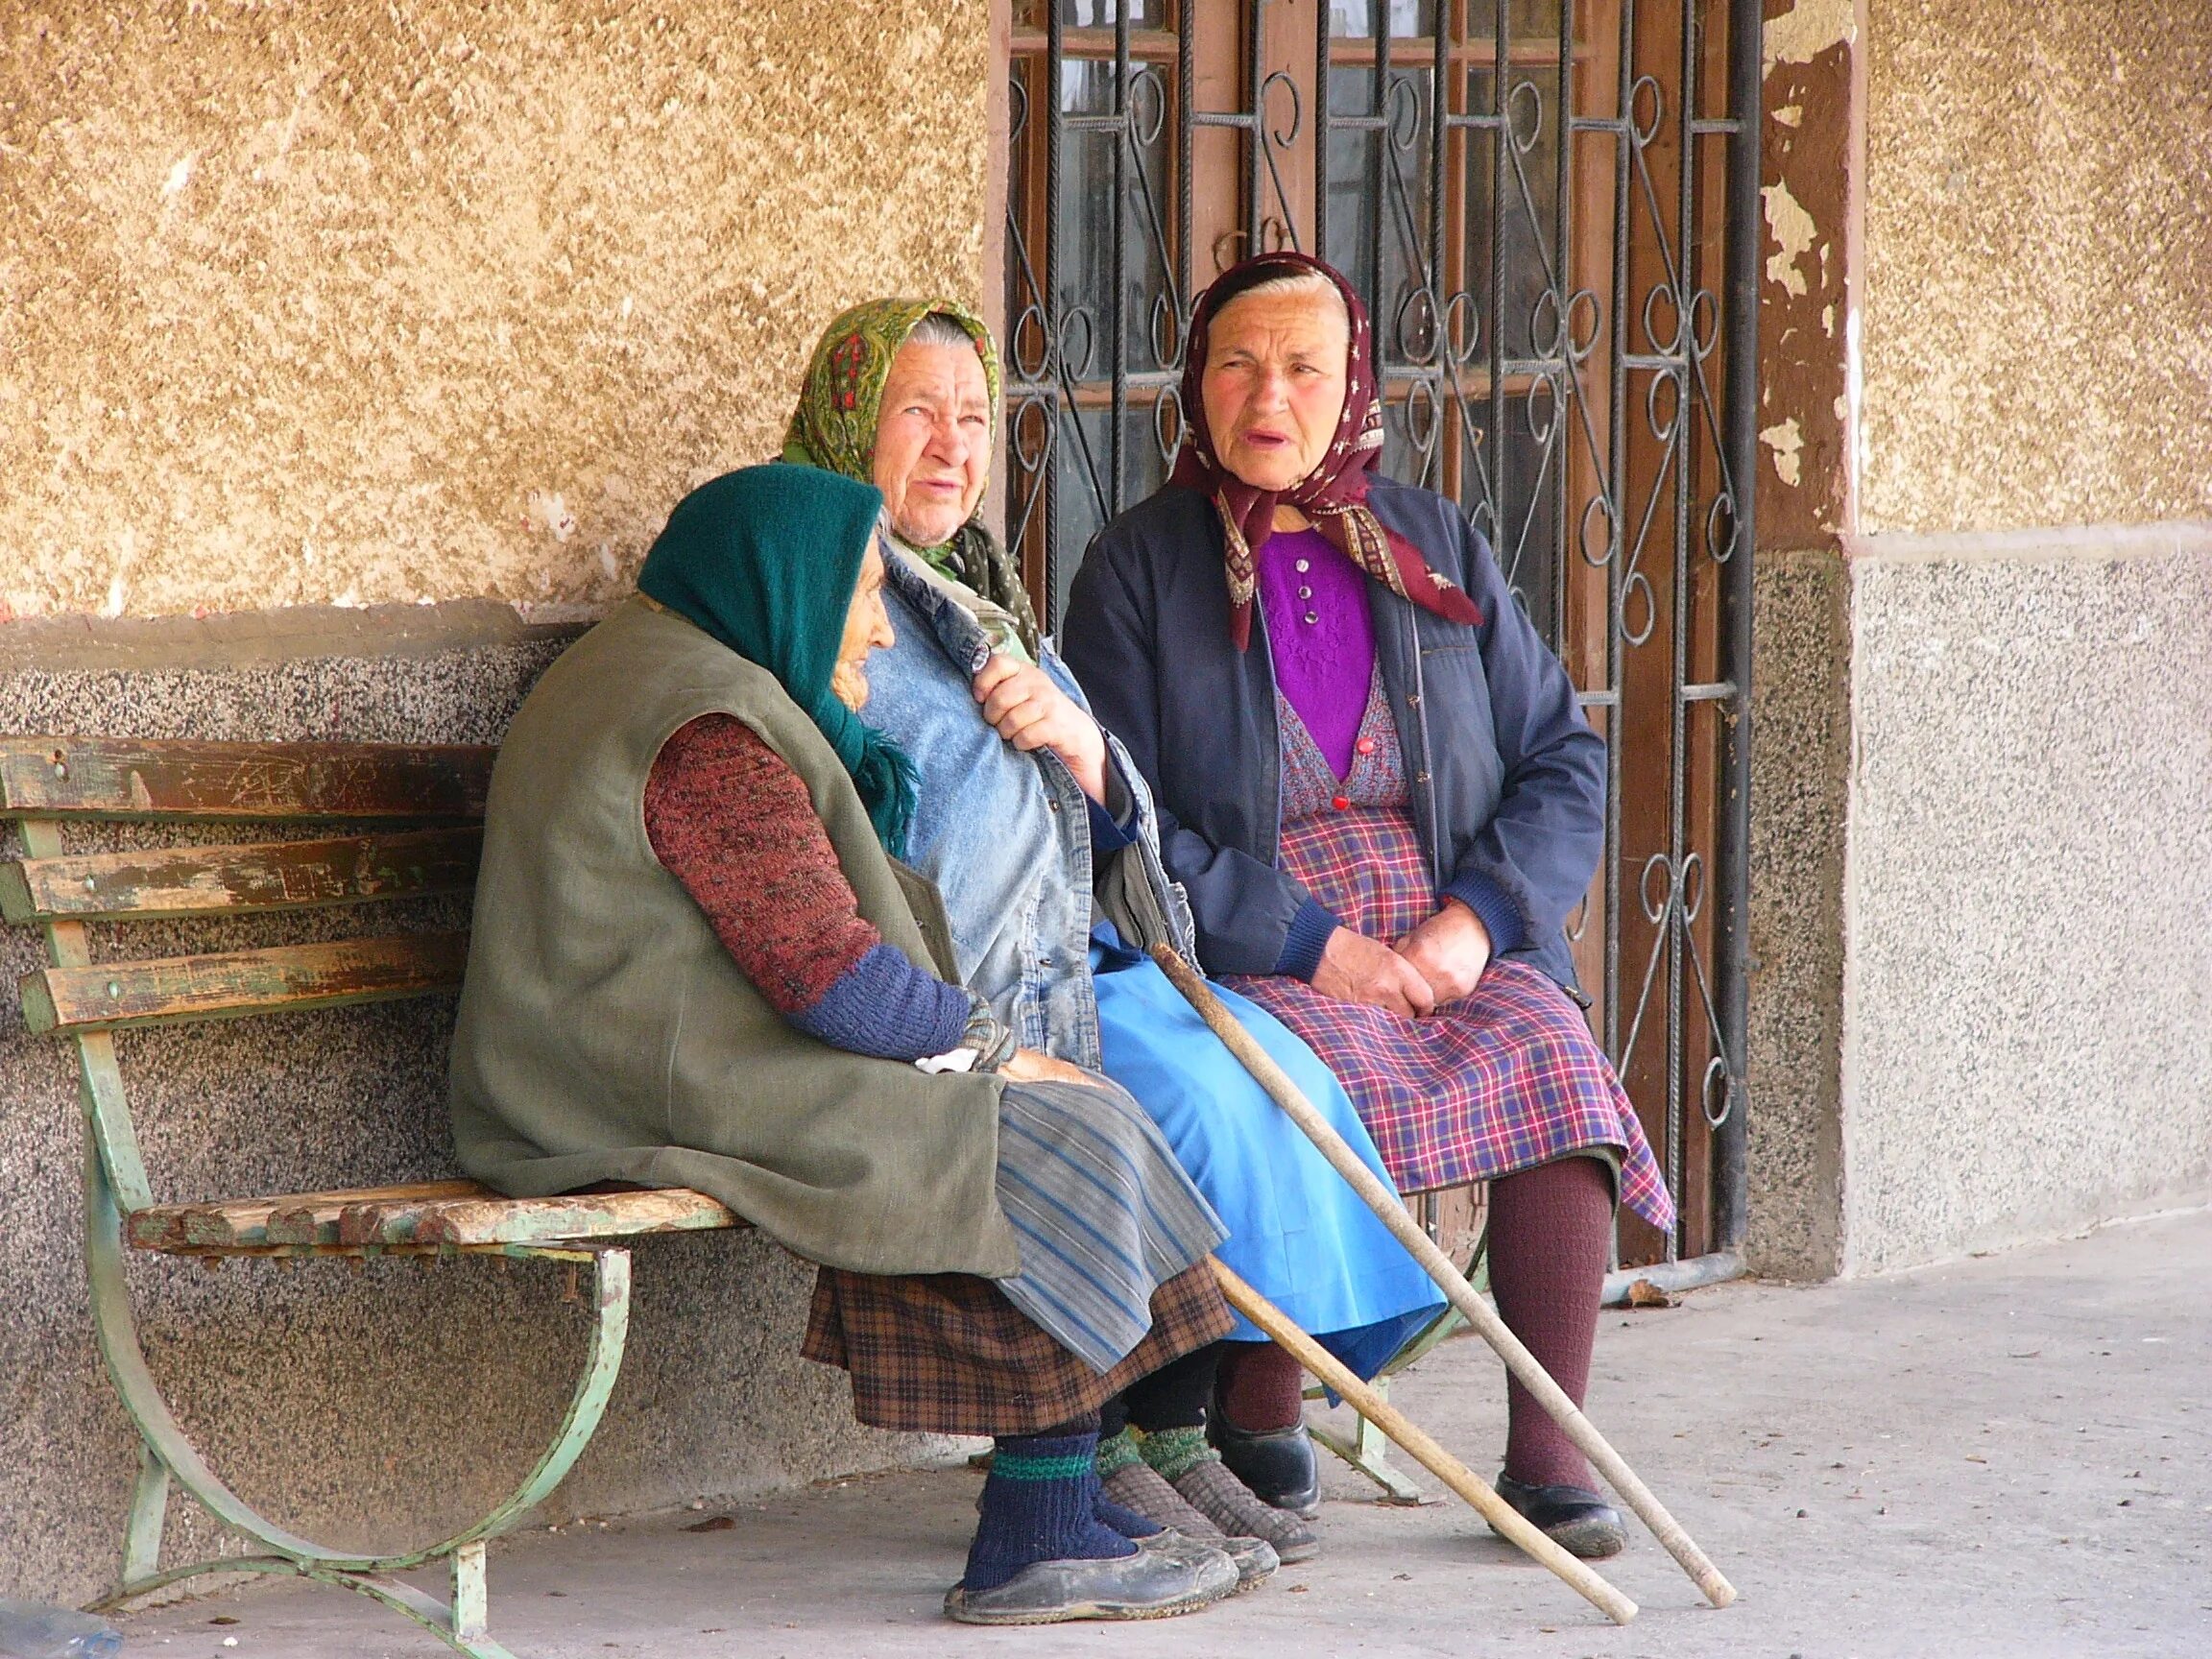 Village woman. Пенсионеры в деревне. Пенсионерка в деревне. Пенсионеры в Болгарии. Сельские жители.